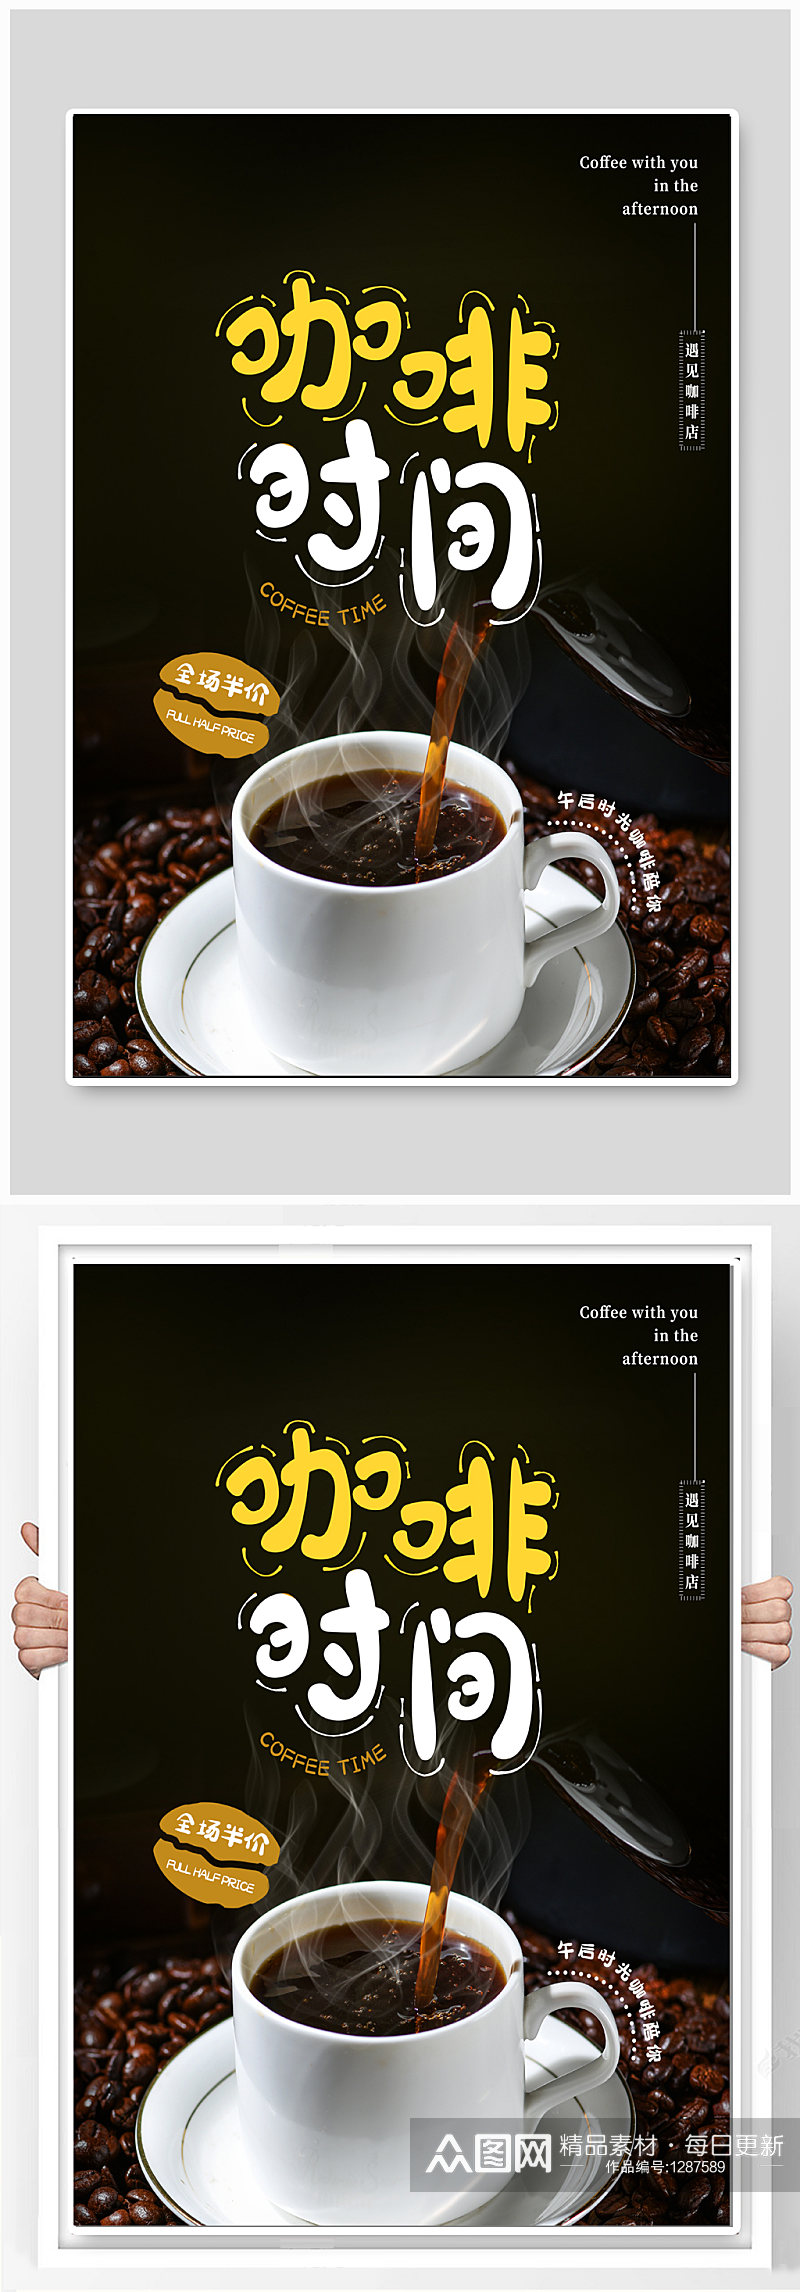 咖啡时间咖啡饮品海报素材